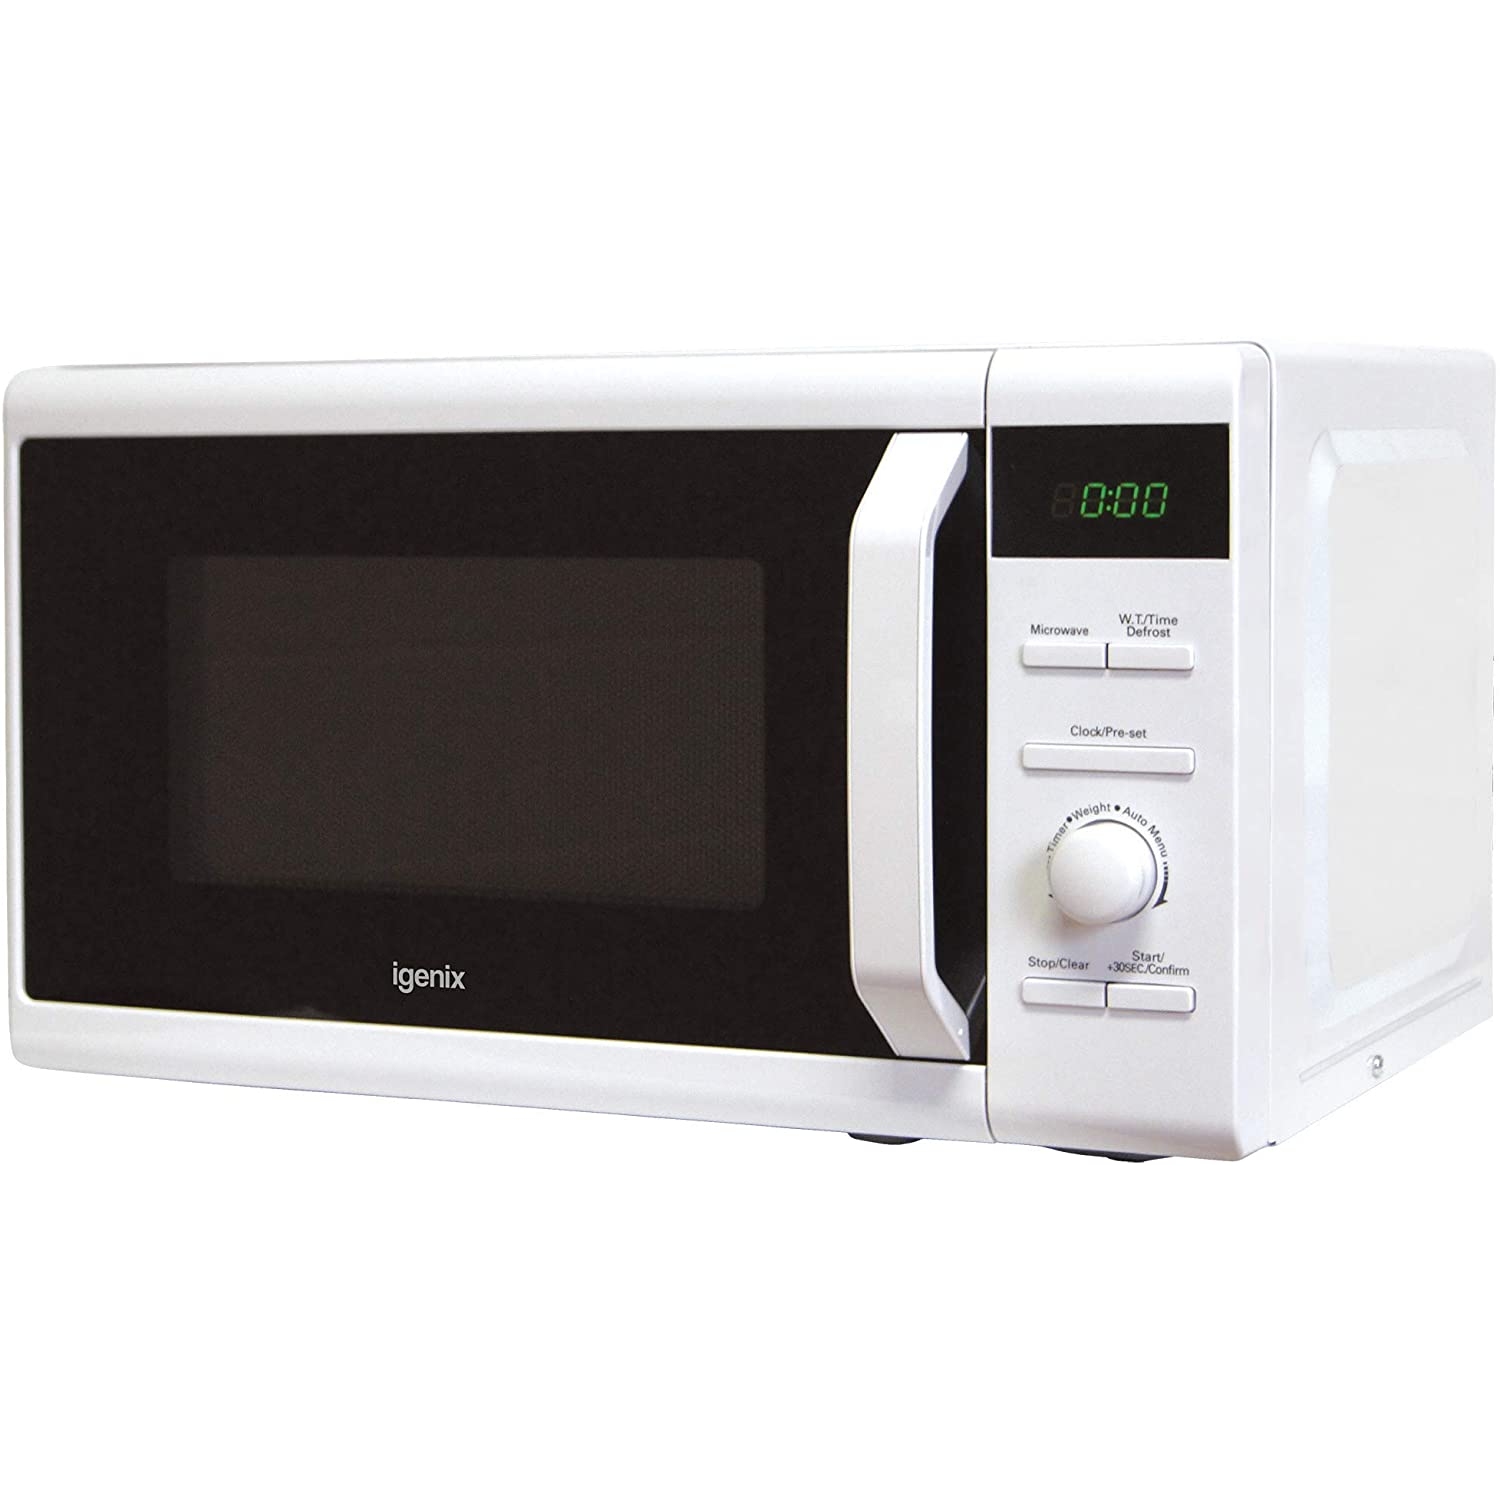 Igenix 20L white microwave - 0